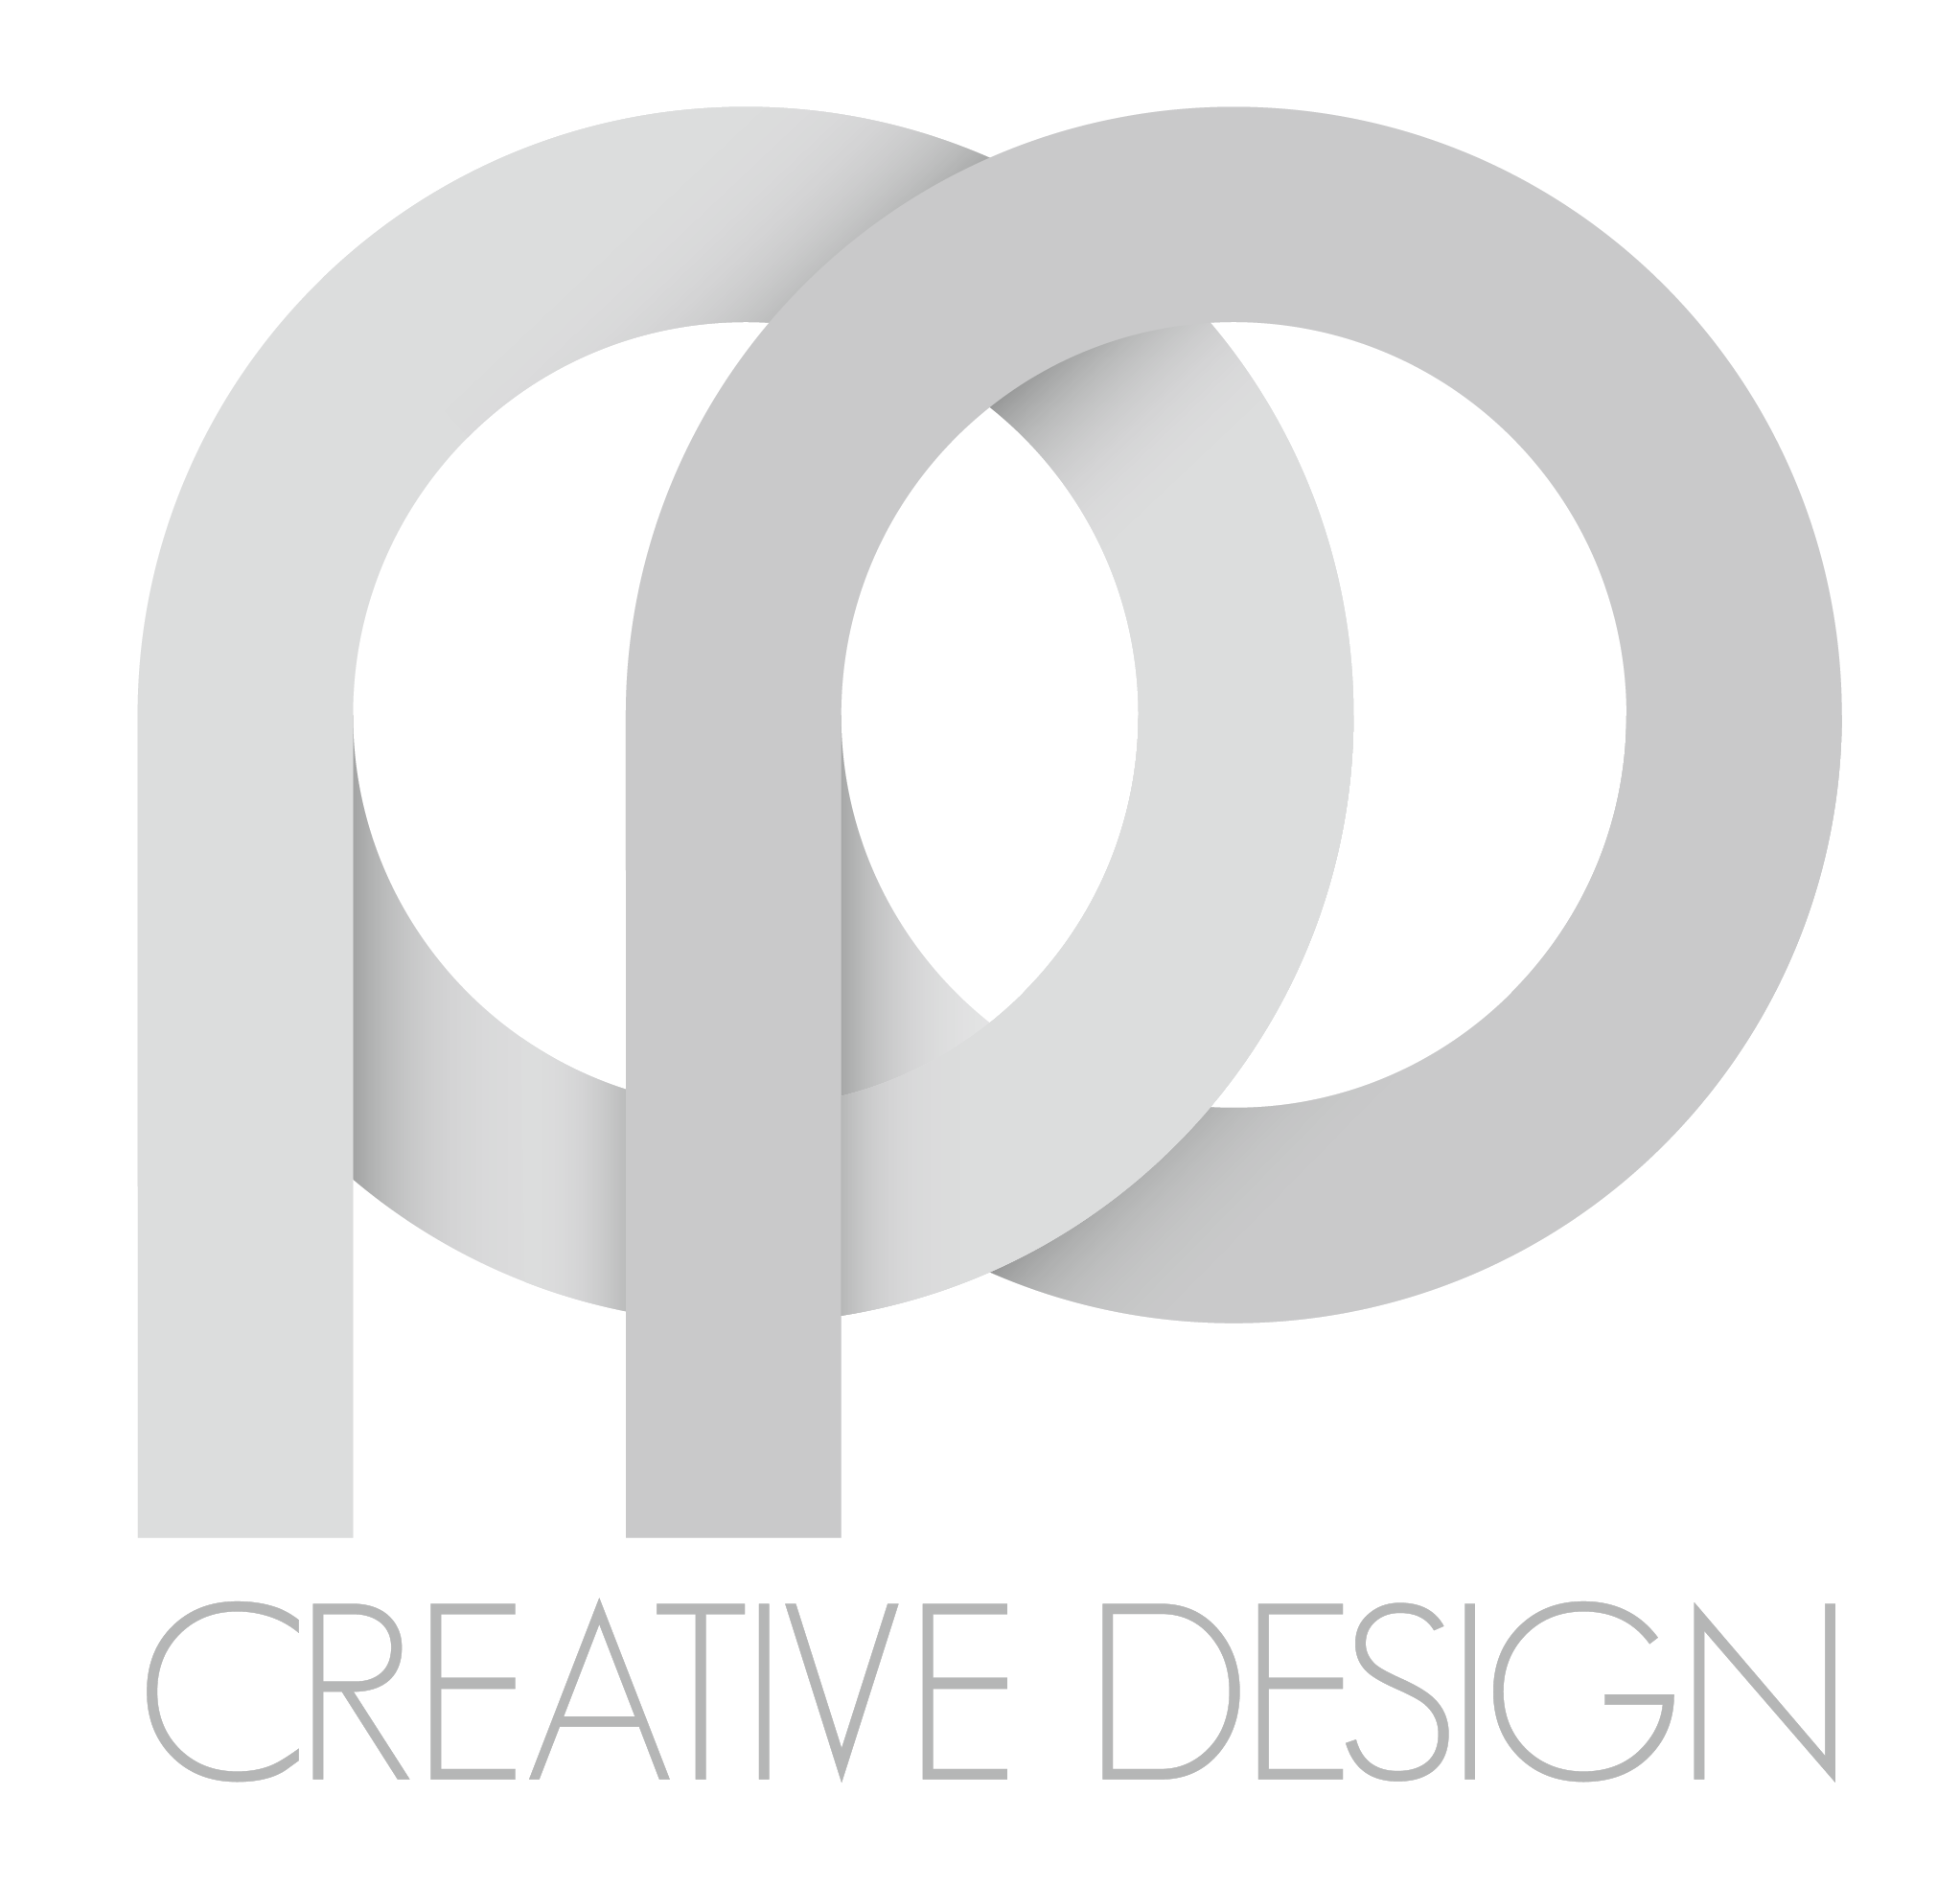 PP Creative Design